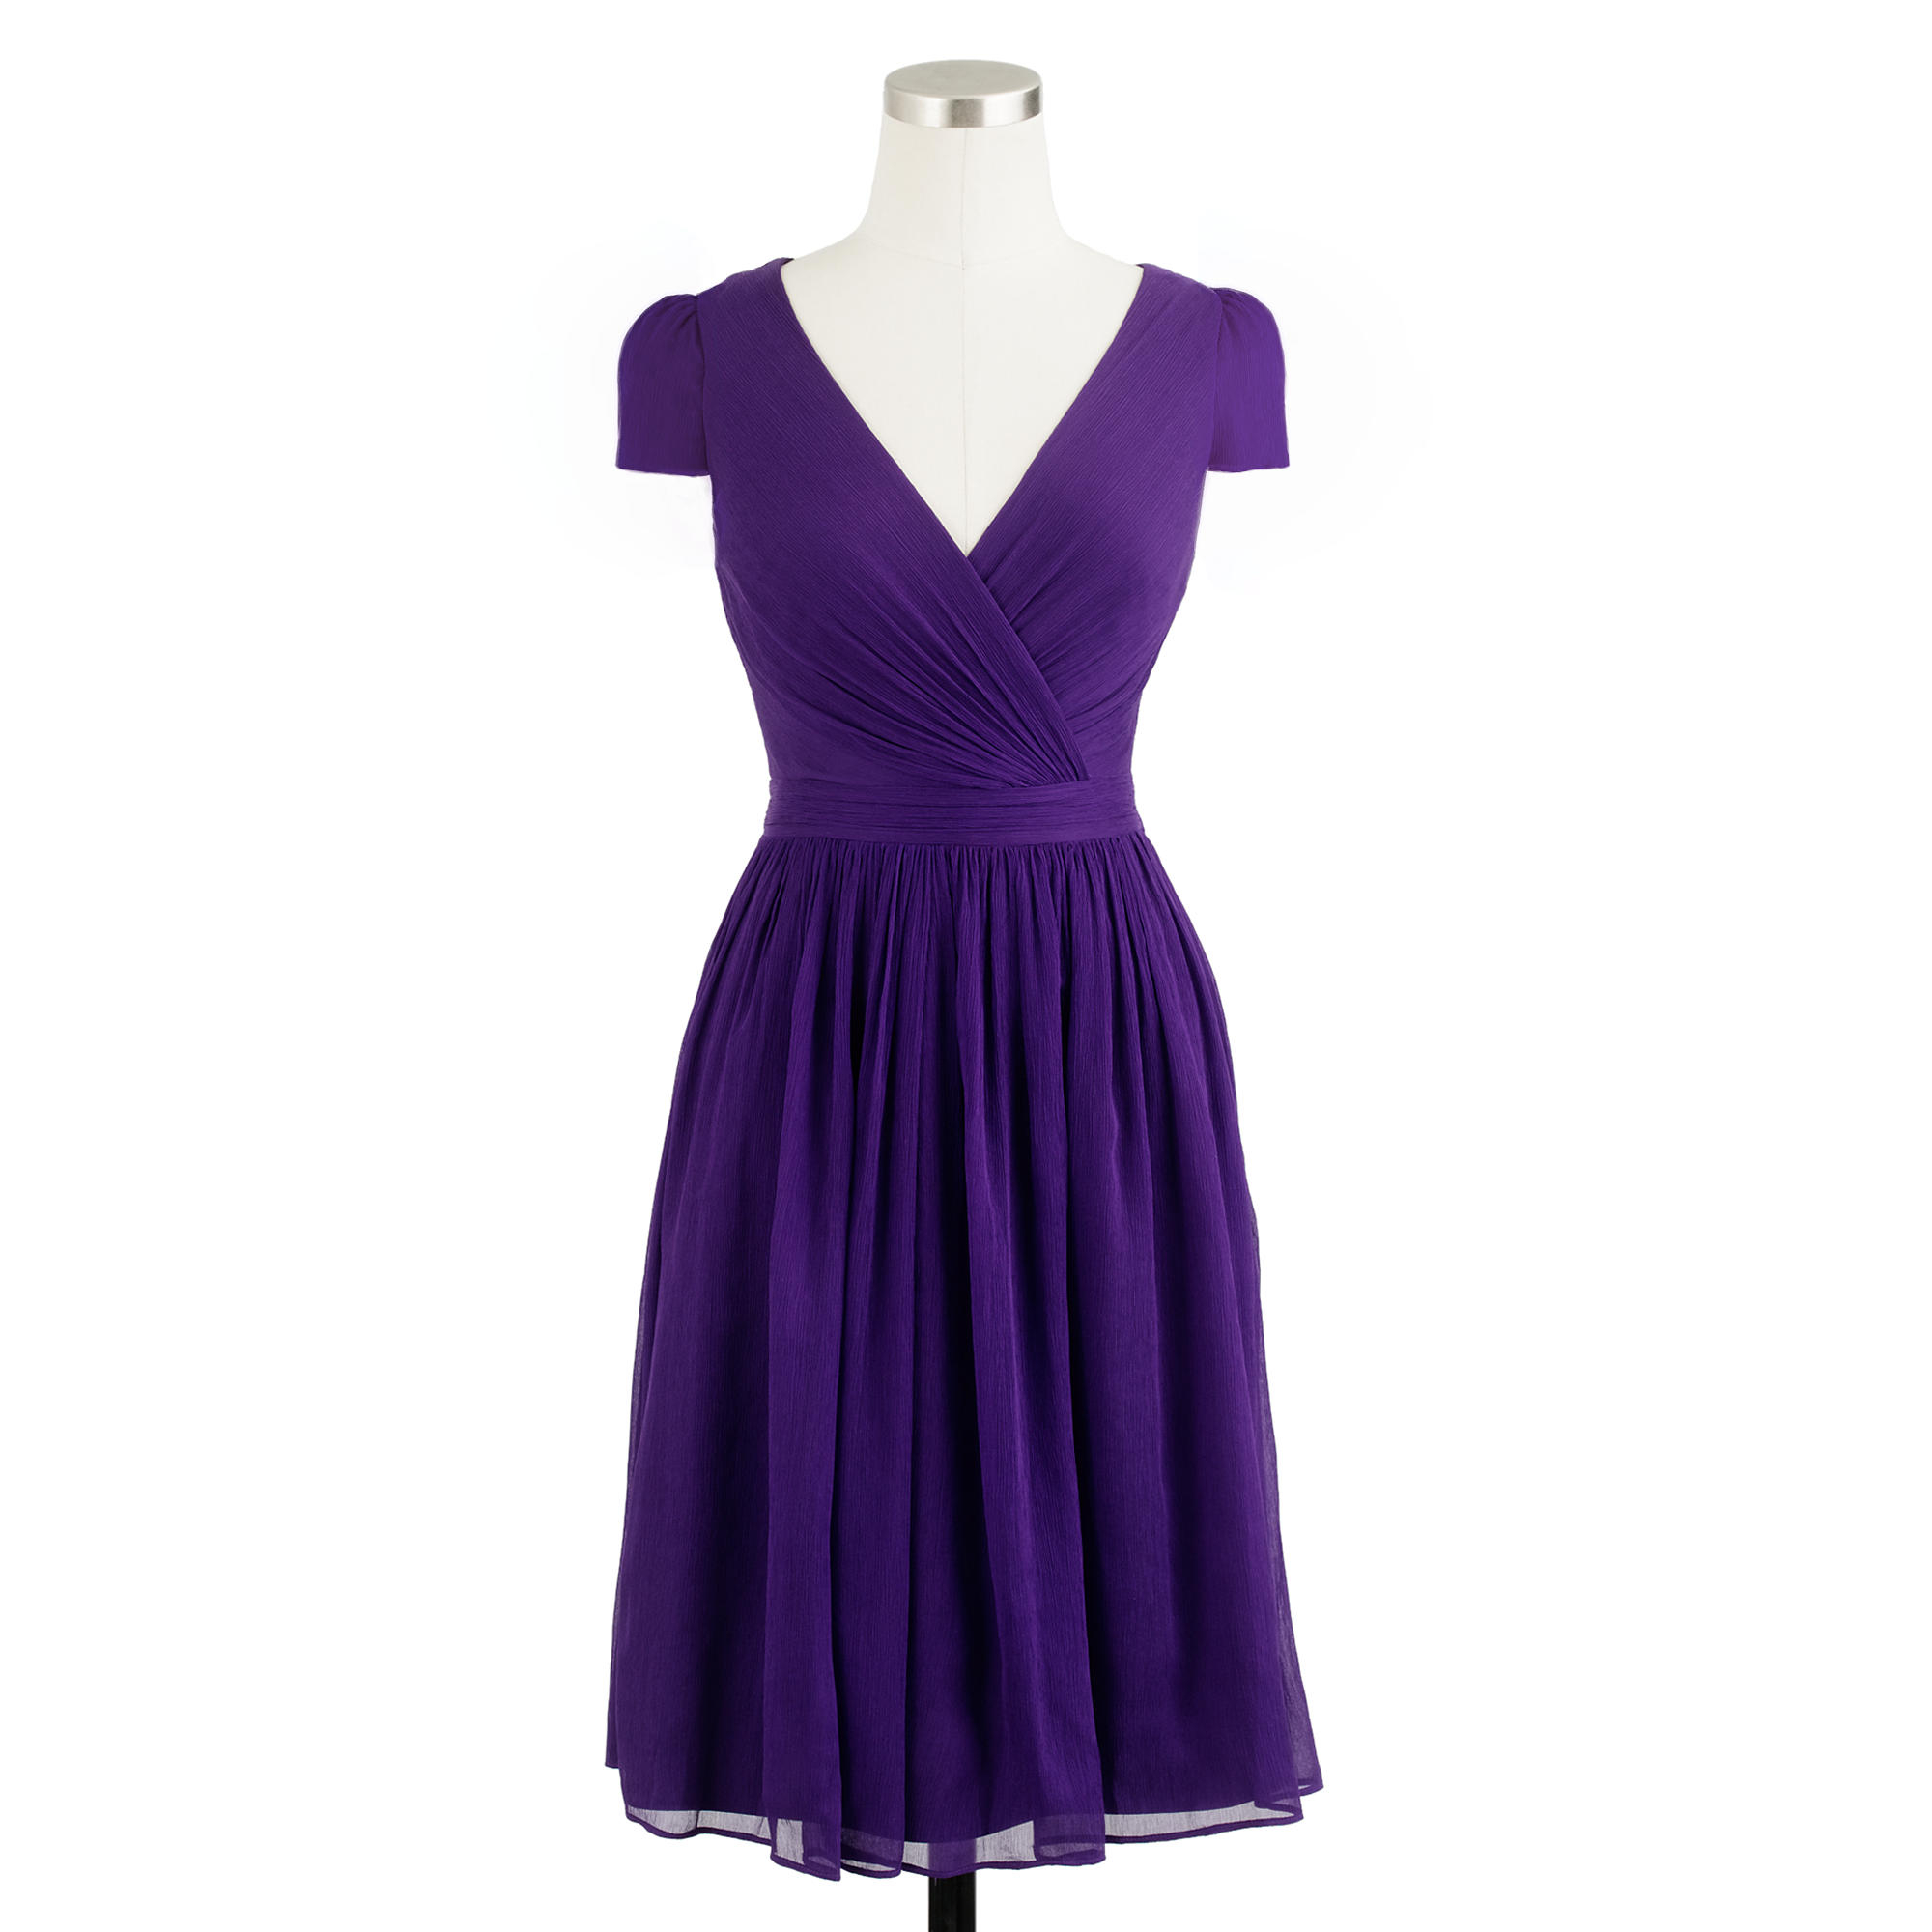 Lyst - J.Crew Mirabelle Dress In Silk Chiffon in Purple